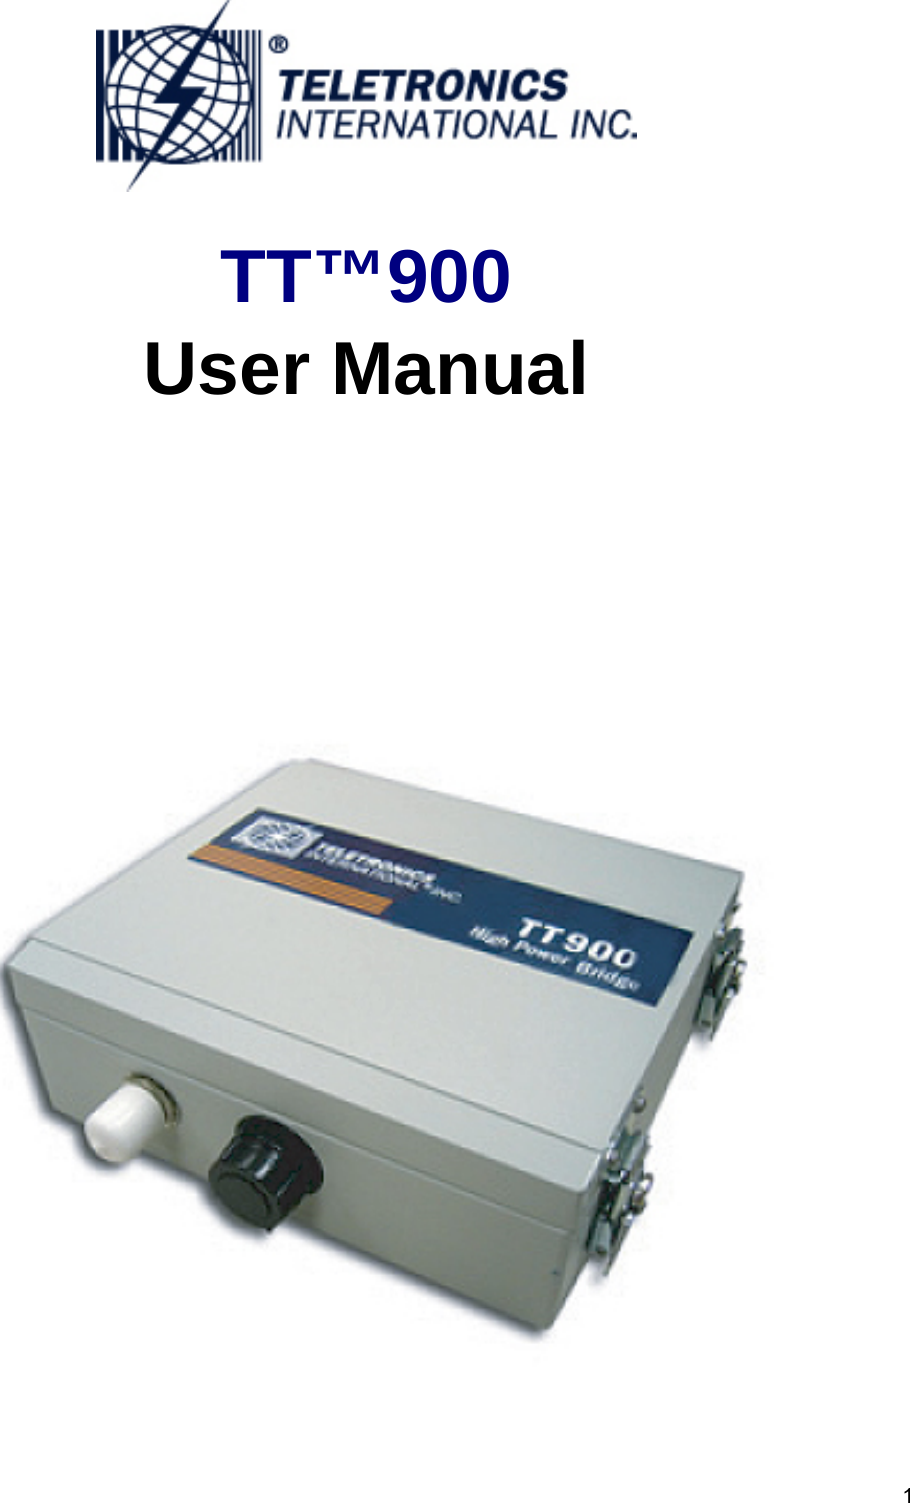  1  TT™900 User Manual    802.11b/g 200mW                         